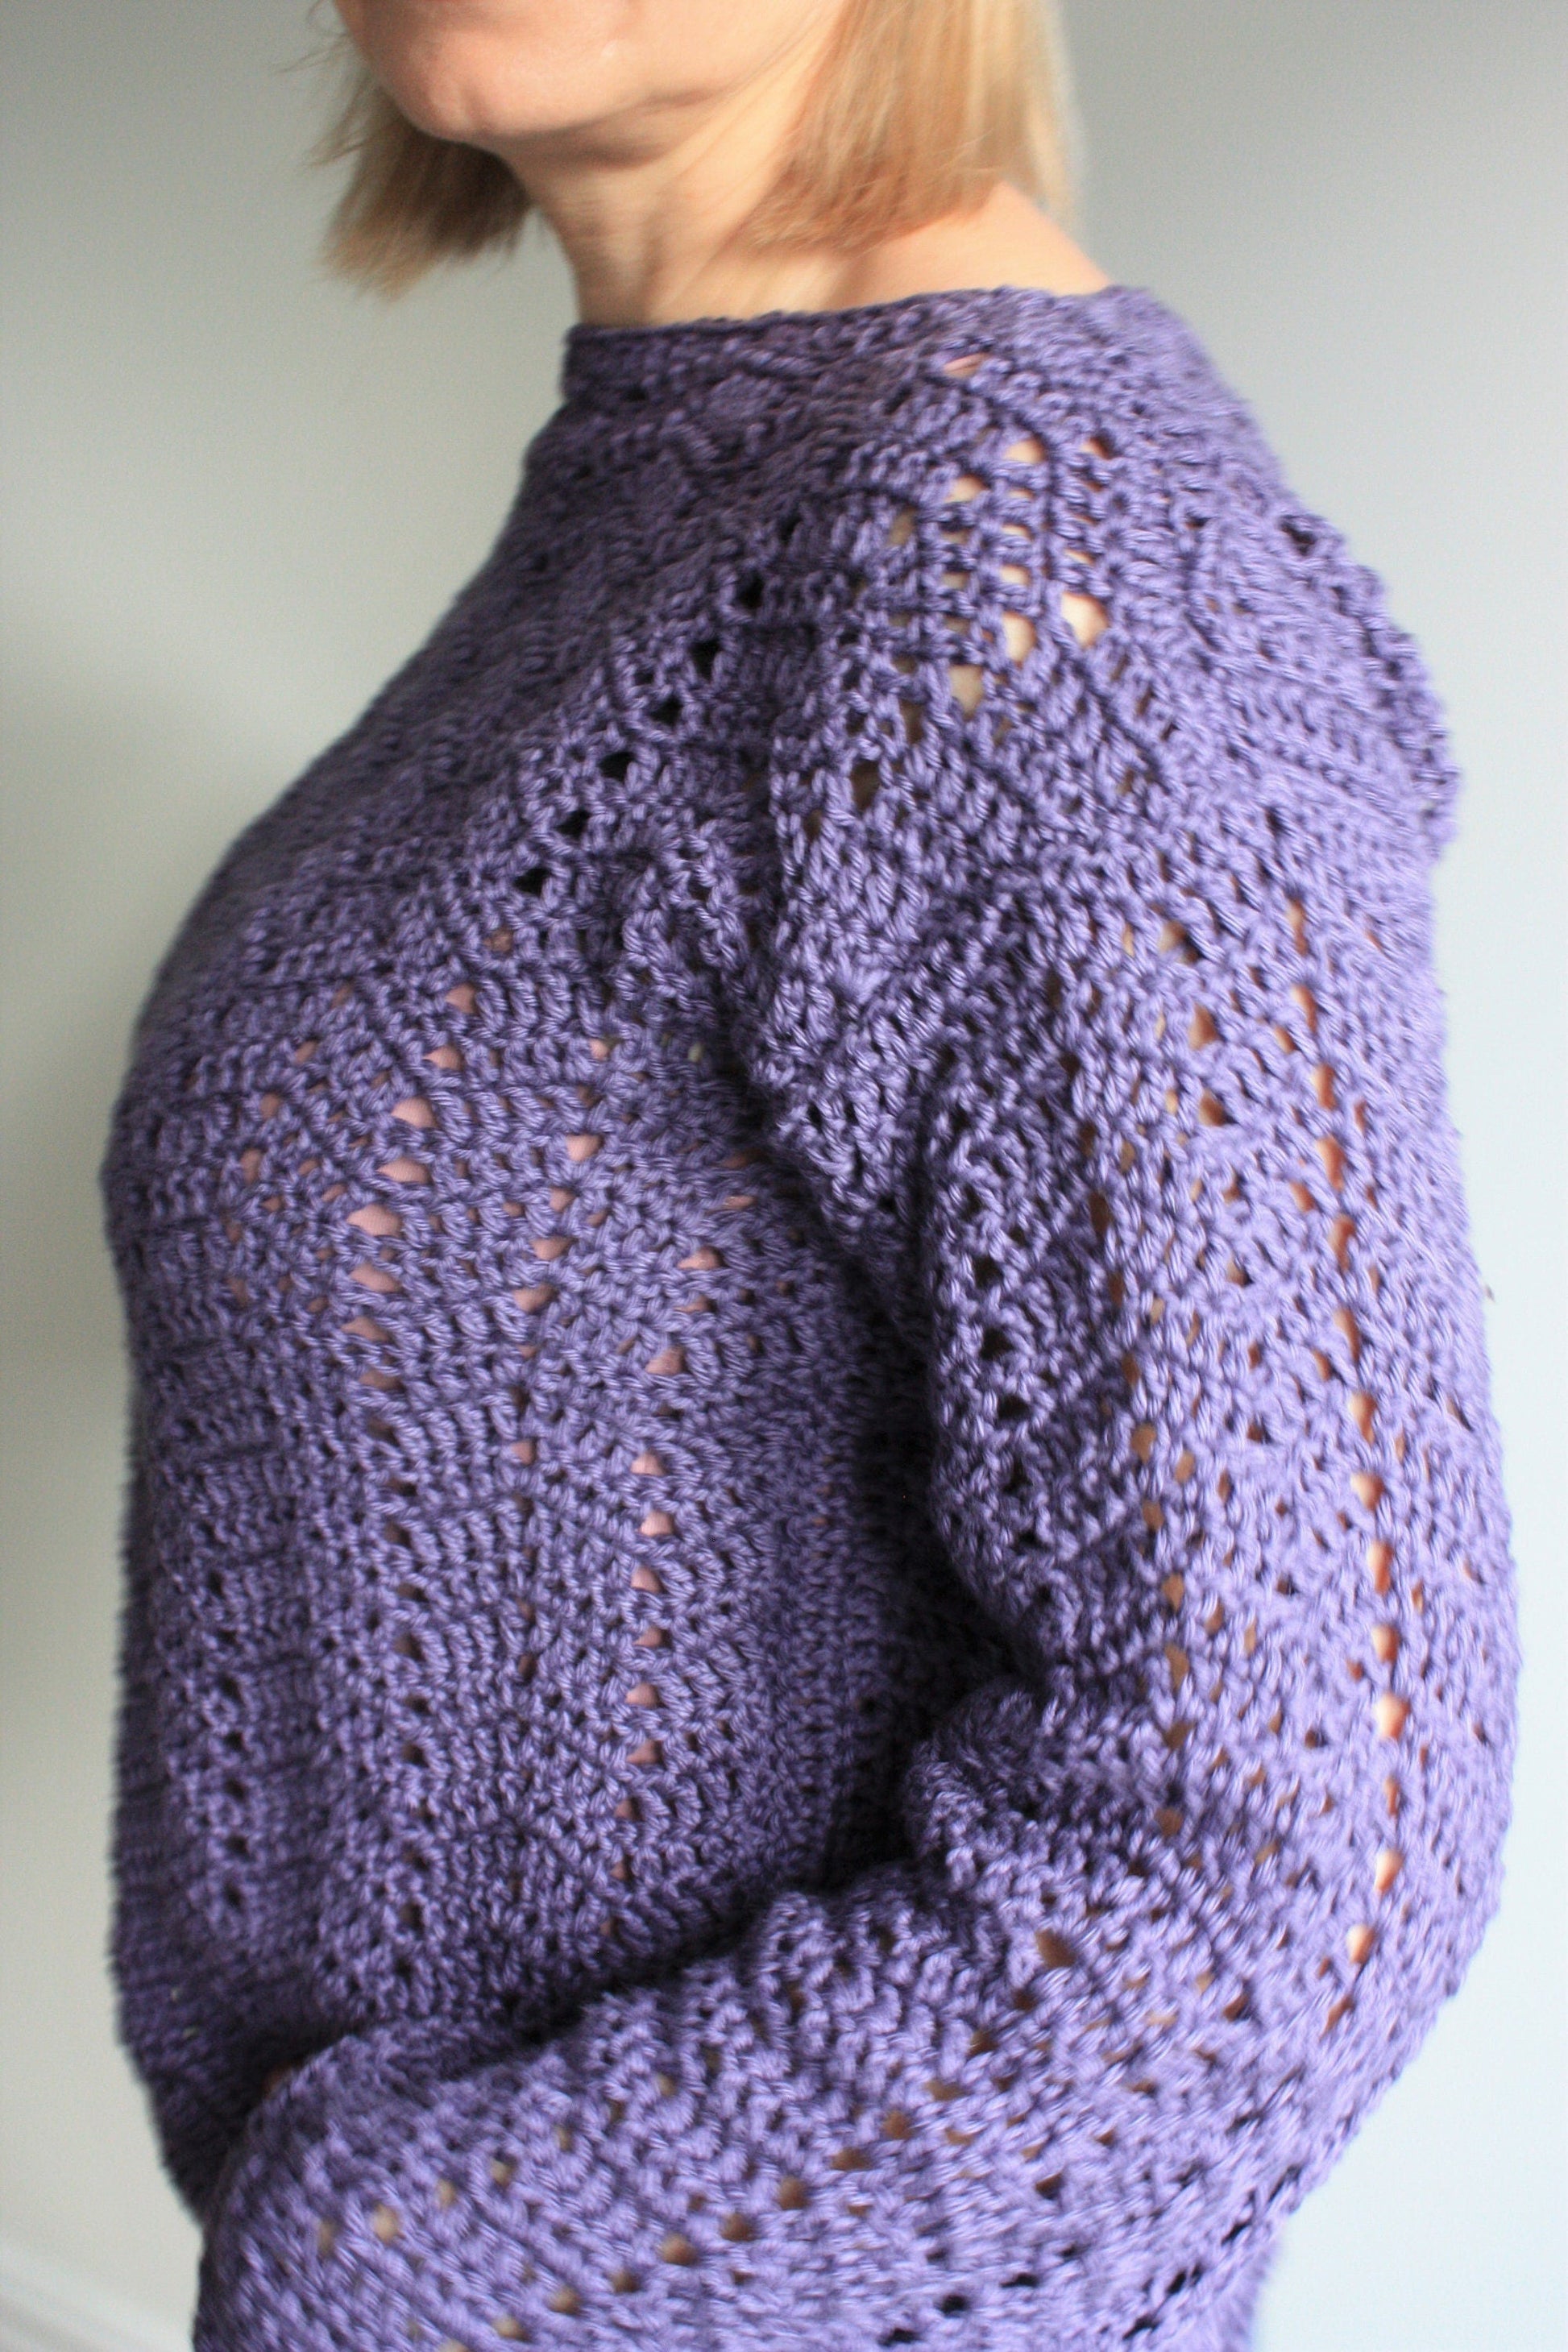 Easy Crochet Pattern - Spring Breeze Lace Sweater - King & Eye